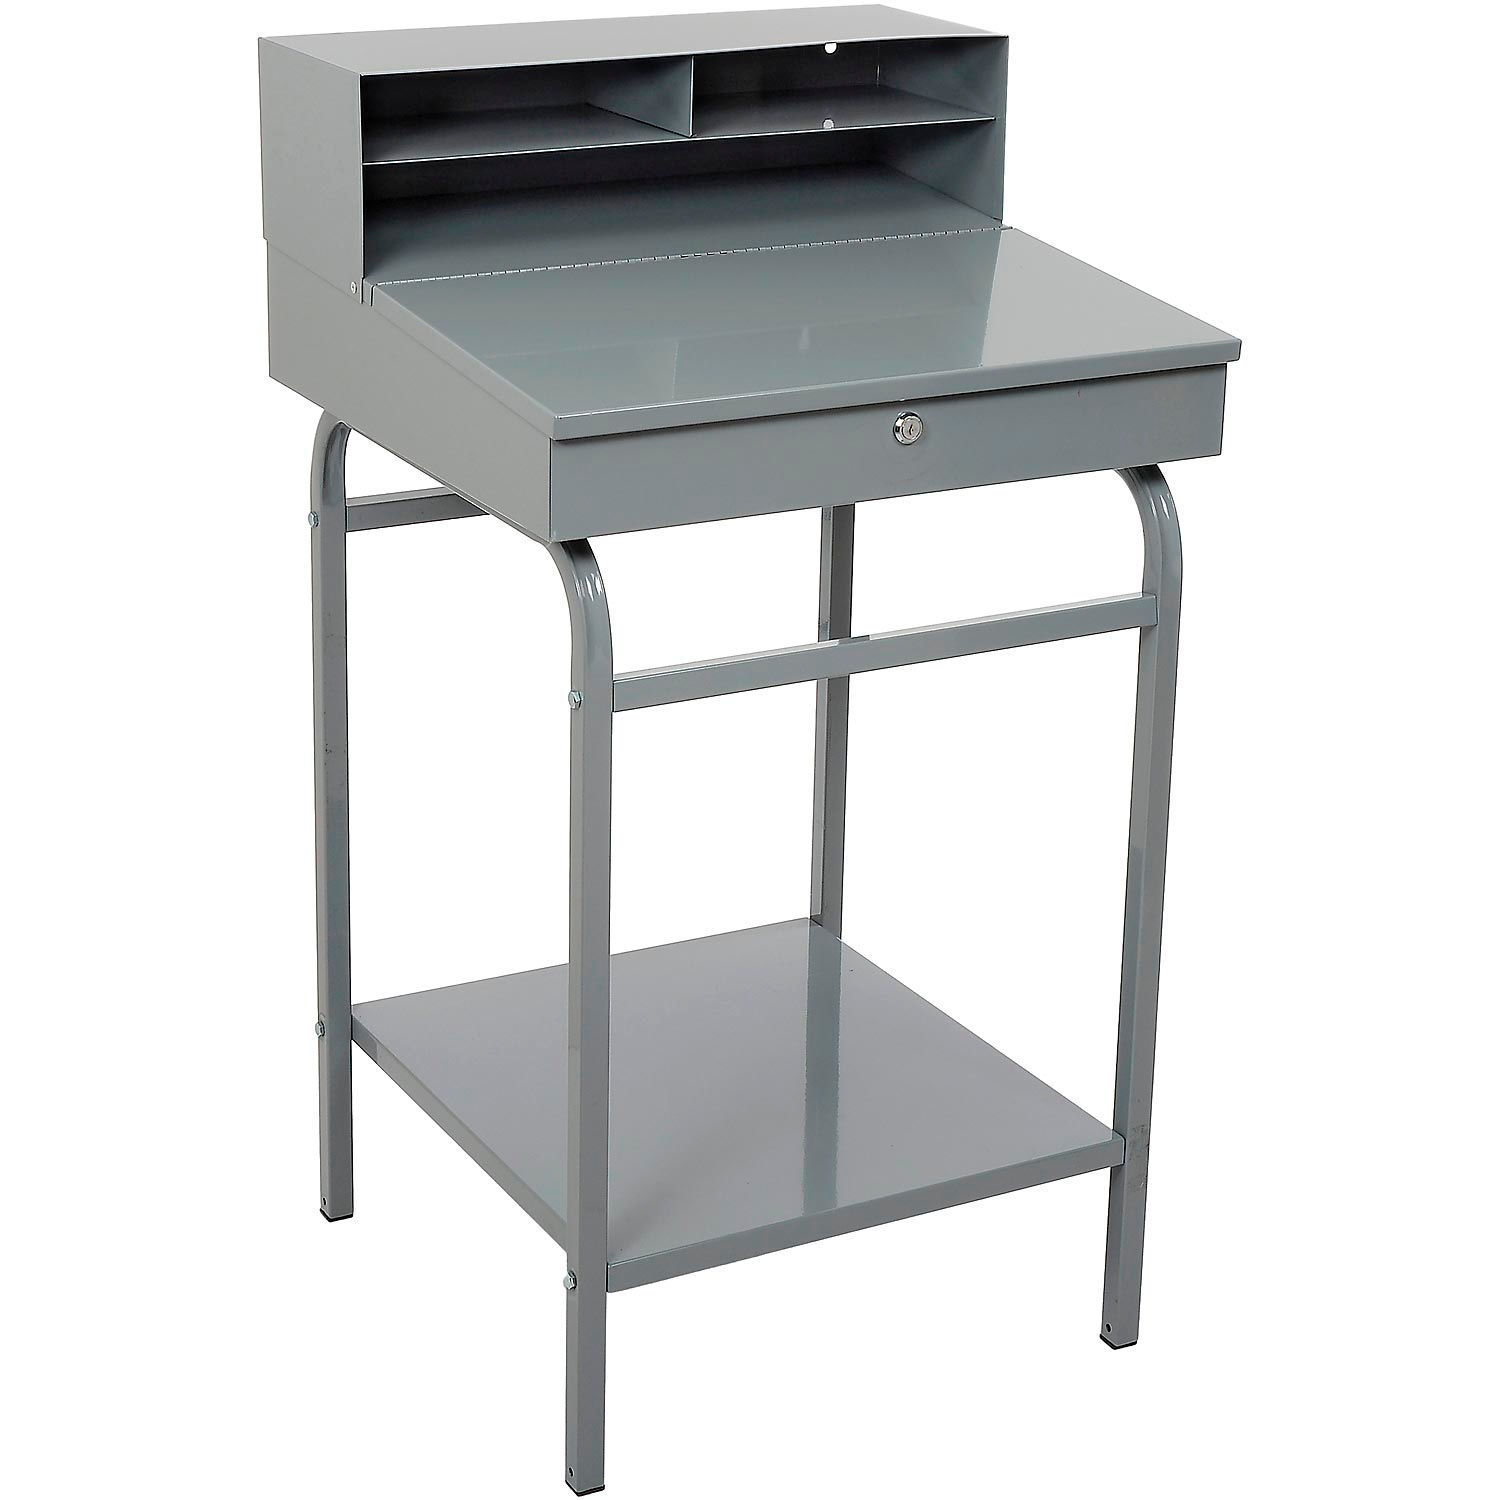 Shop Desks Free Standing Shop Desks Winholt Shop Desk With